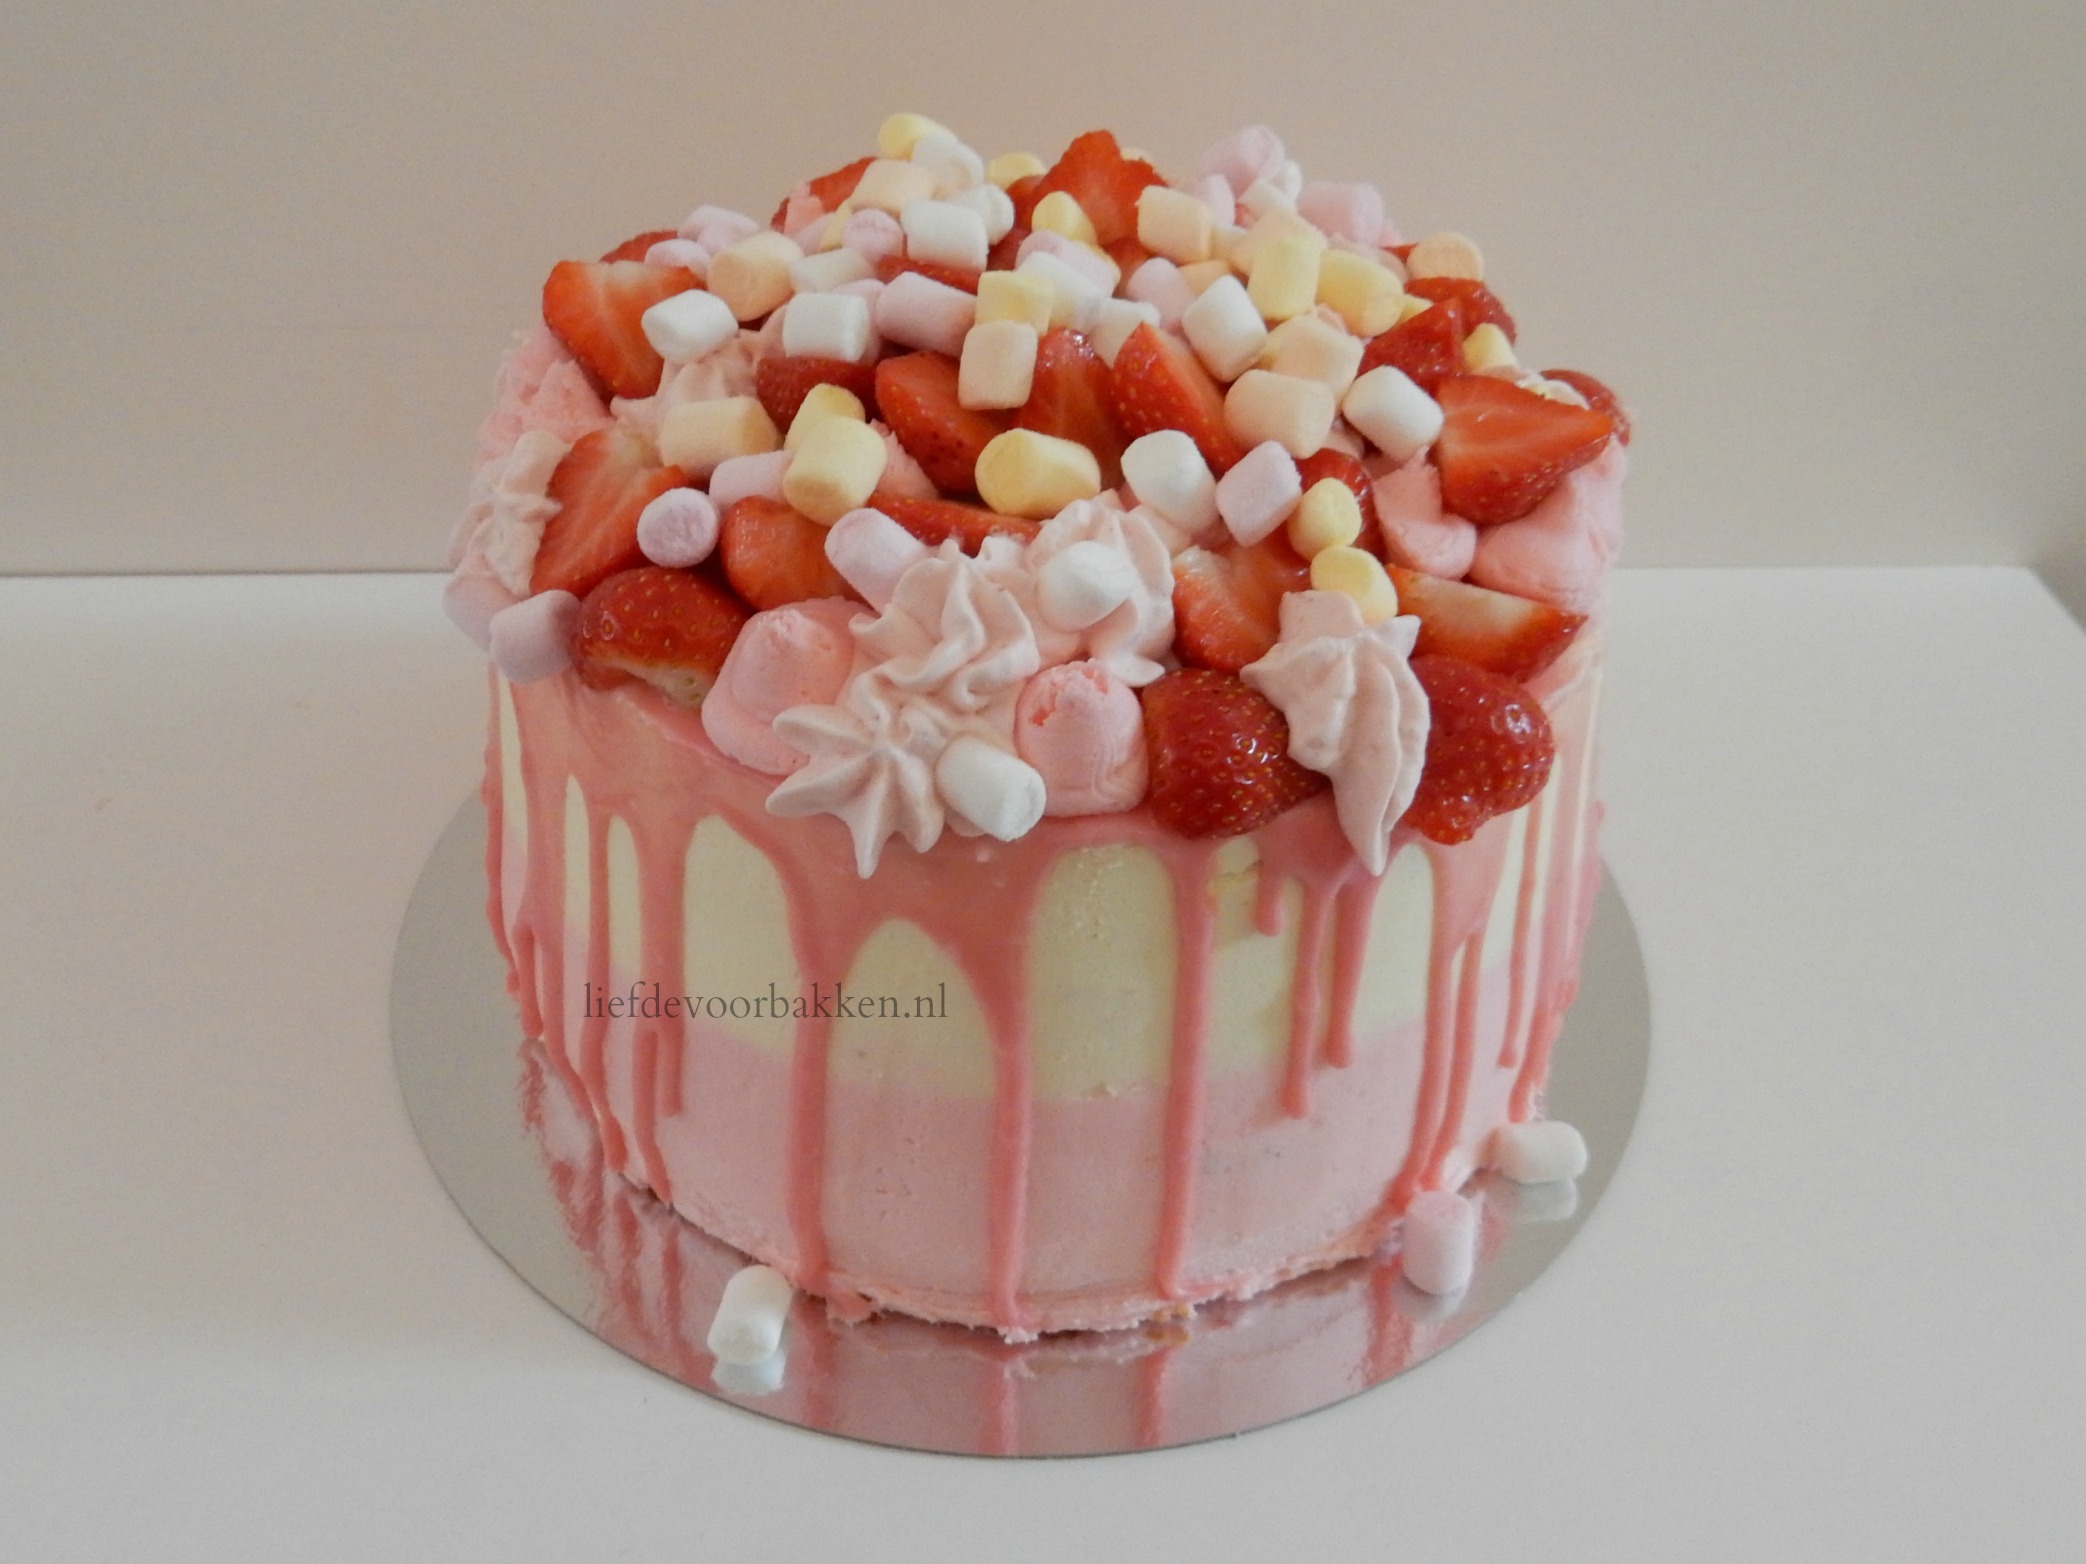 Ongekend Dripcake met verse aardbeien en marshmallows – Liefde voor bakken HI-34